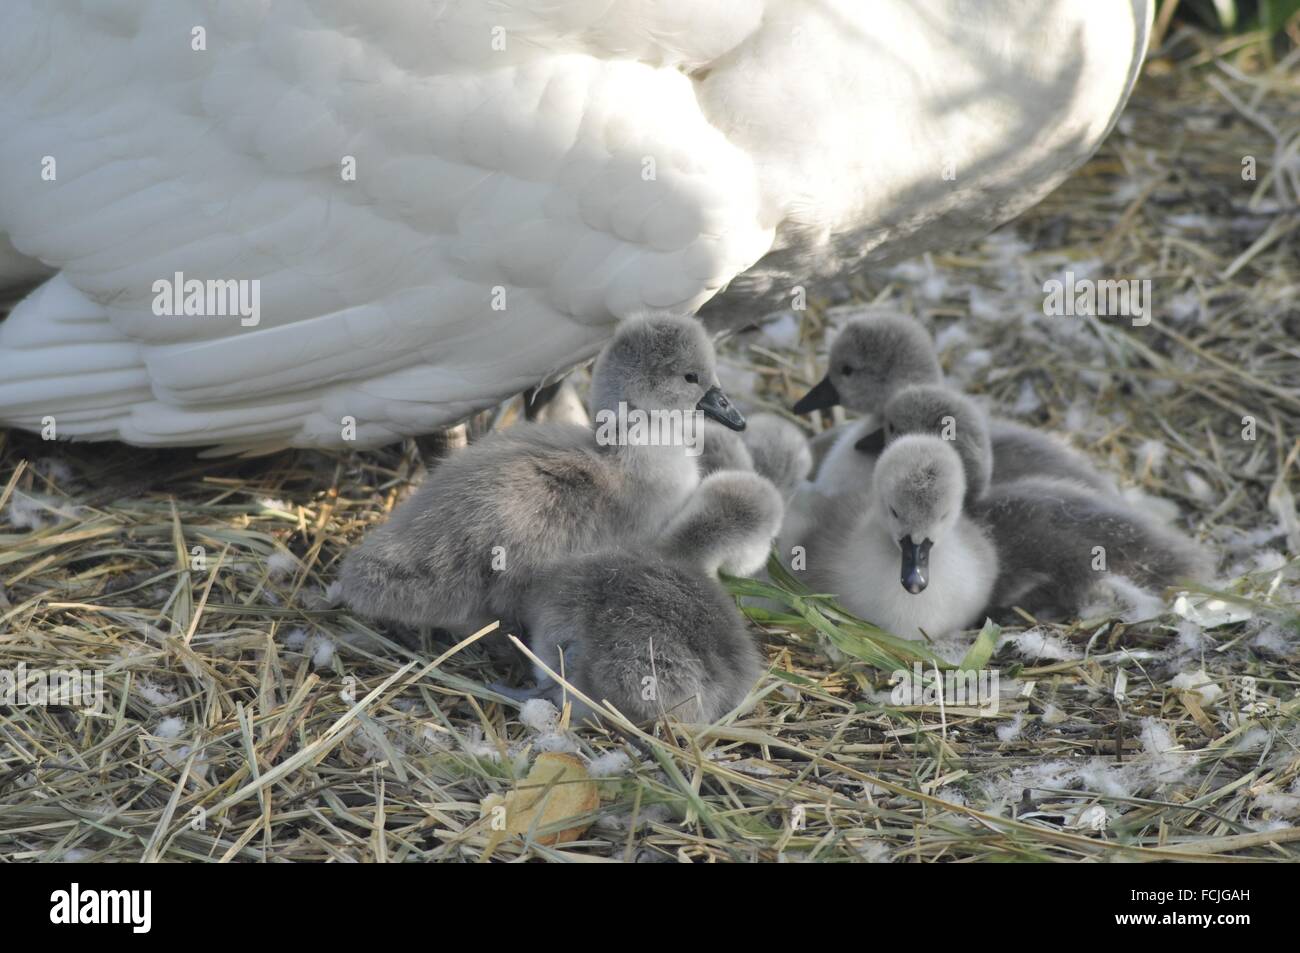 Los animales recién nacidos, Swan, Zoología Cygnus cygnus río Adda Trezzo d'Adda localidad Italia Foto de stock